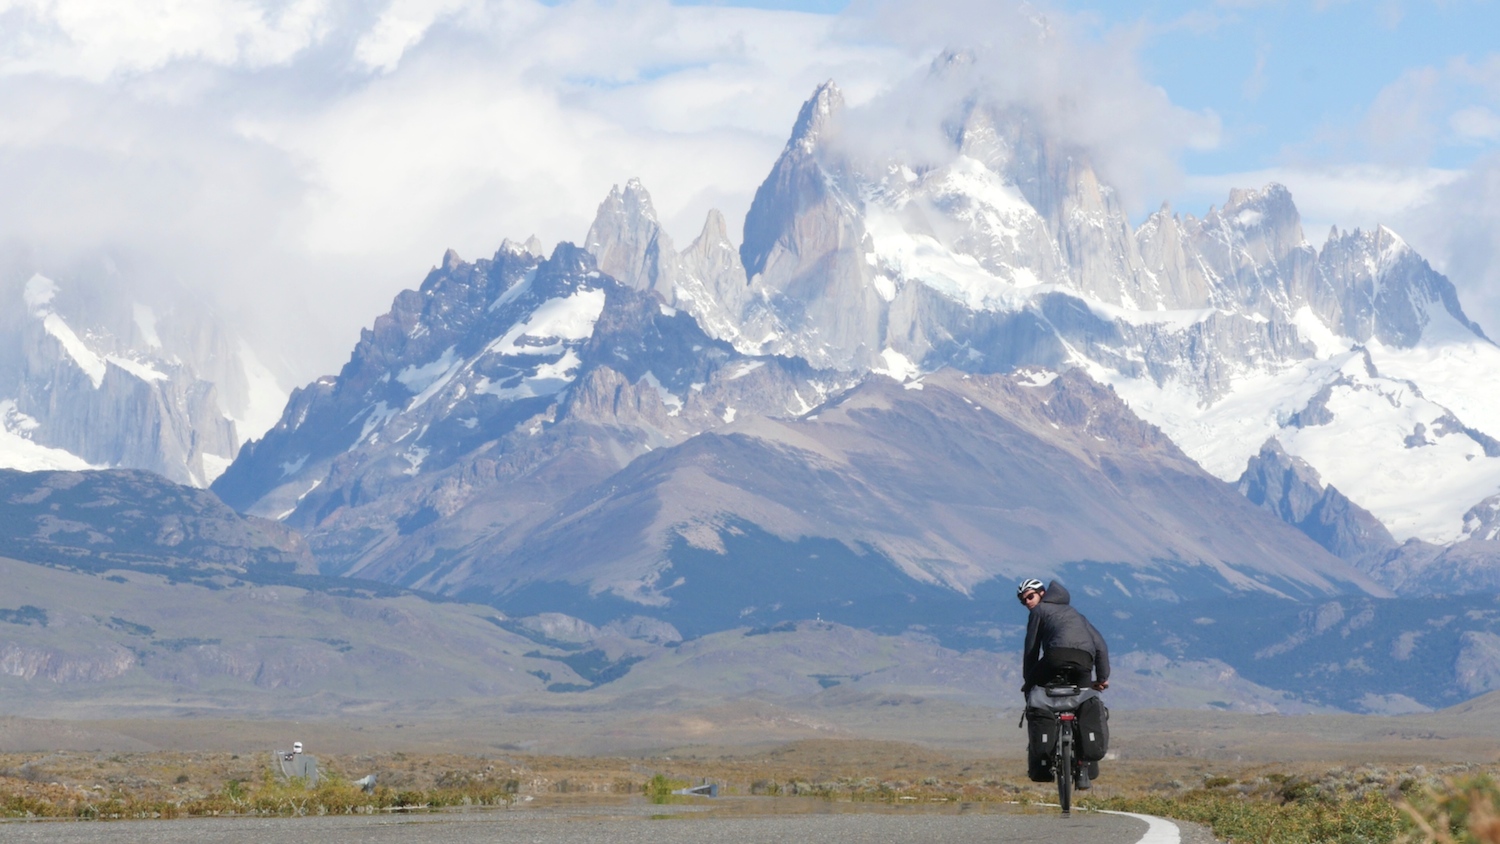 patagonia bike tours